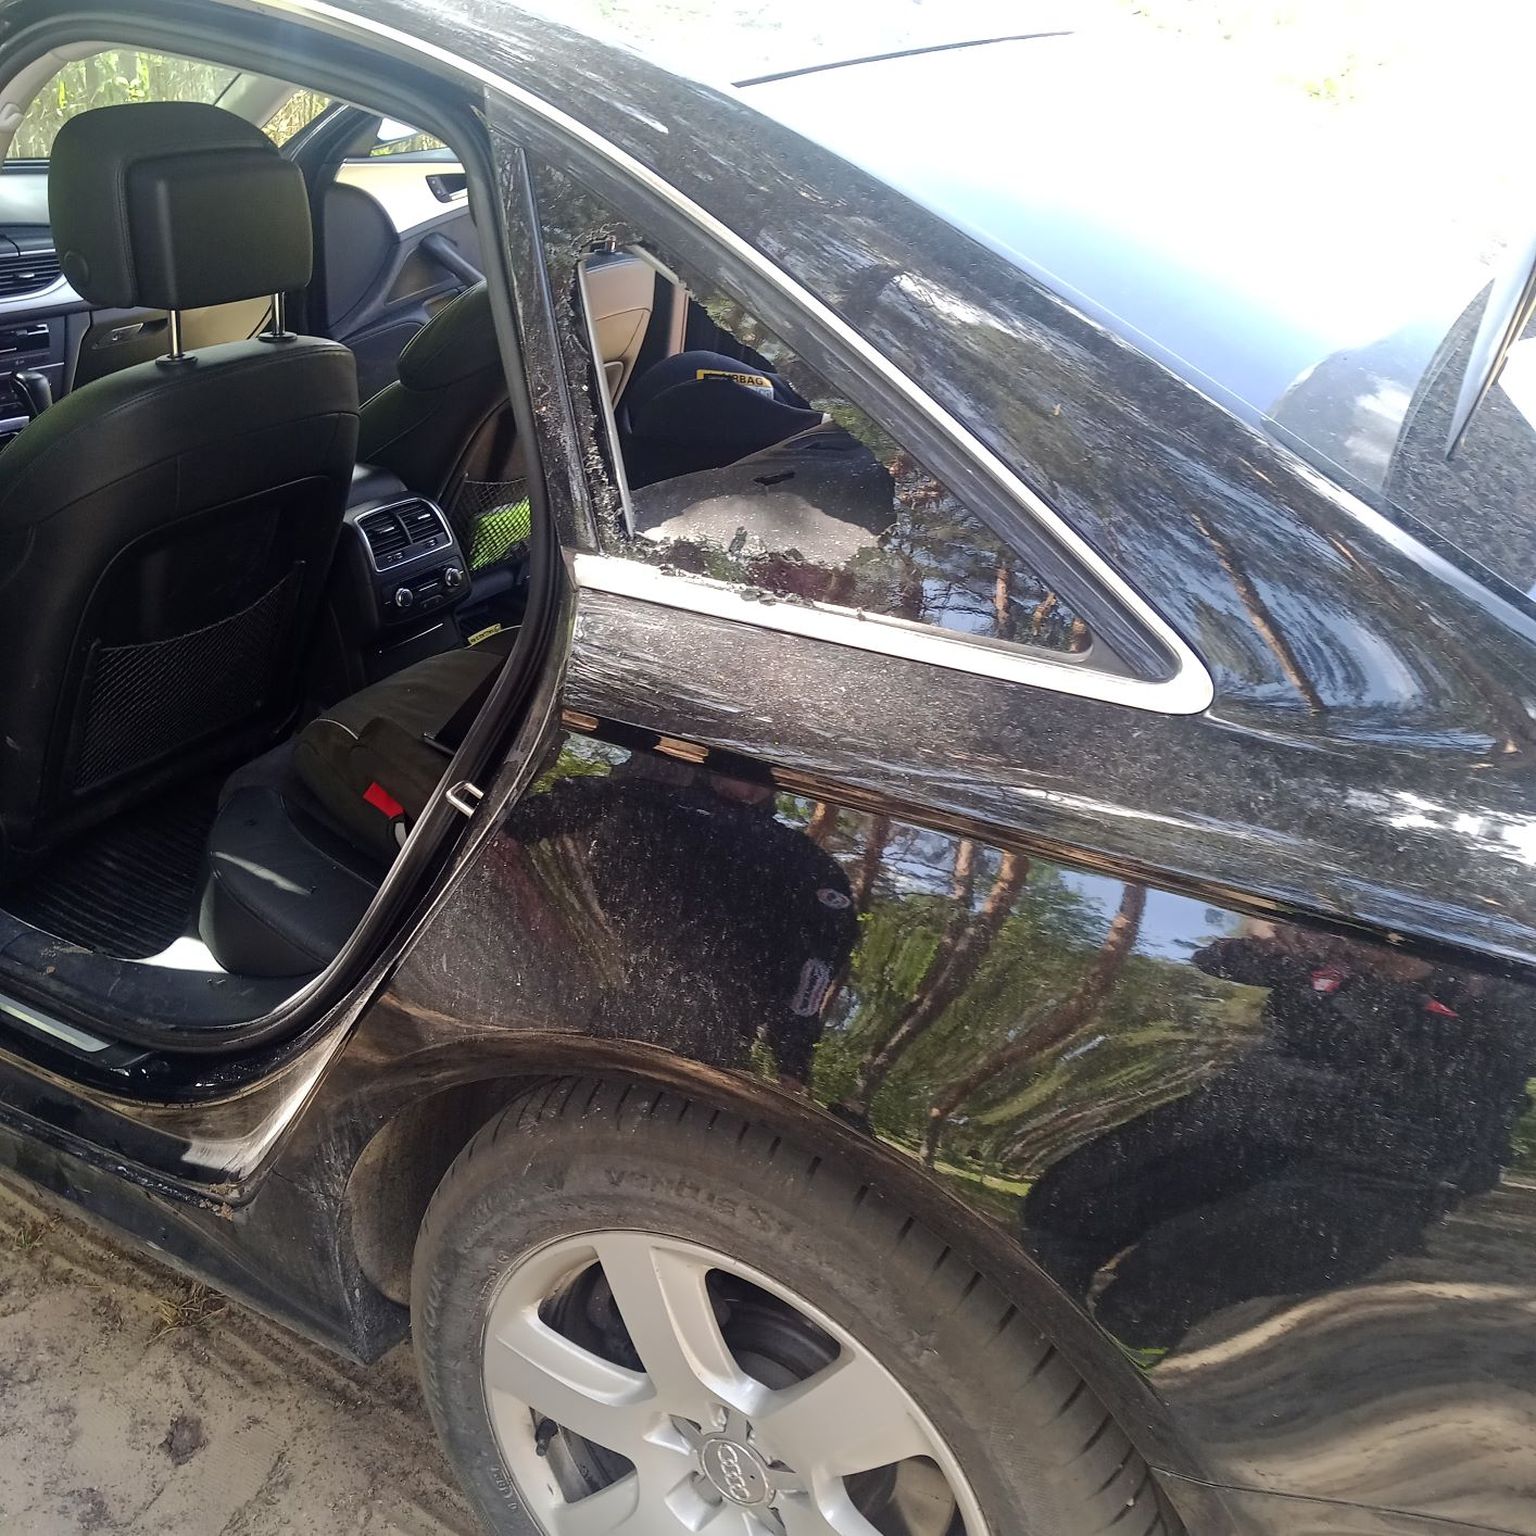 Спасатели разбили небольшое стекло в задней части автомобиля, чтобы открыть двери.